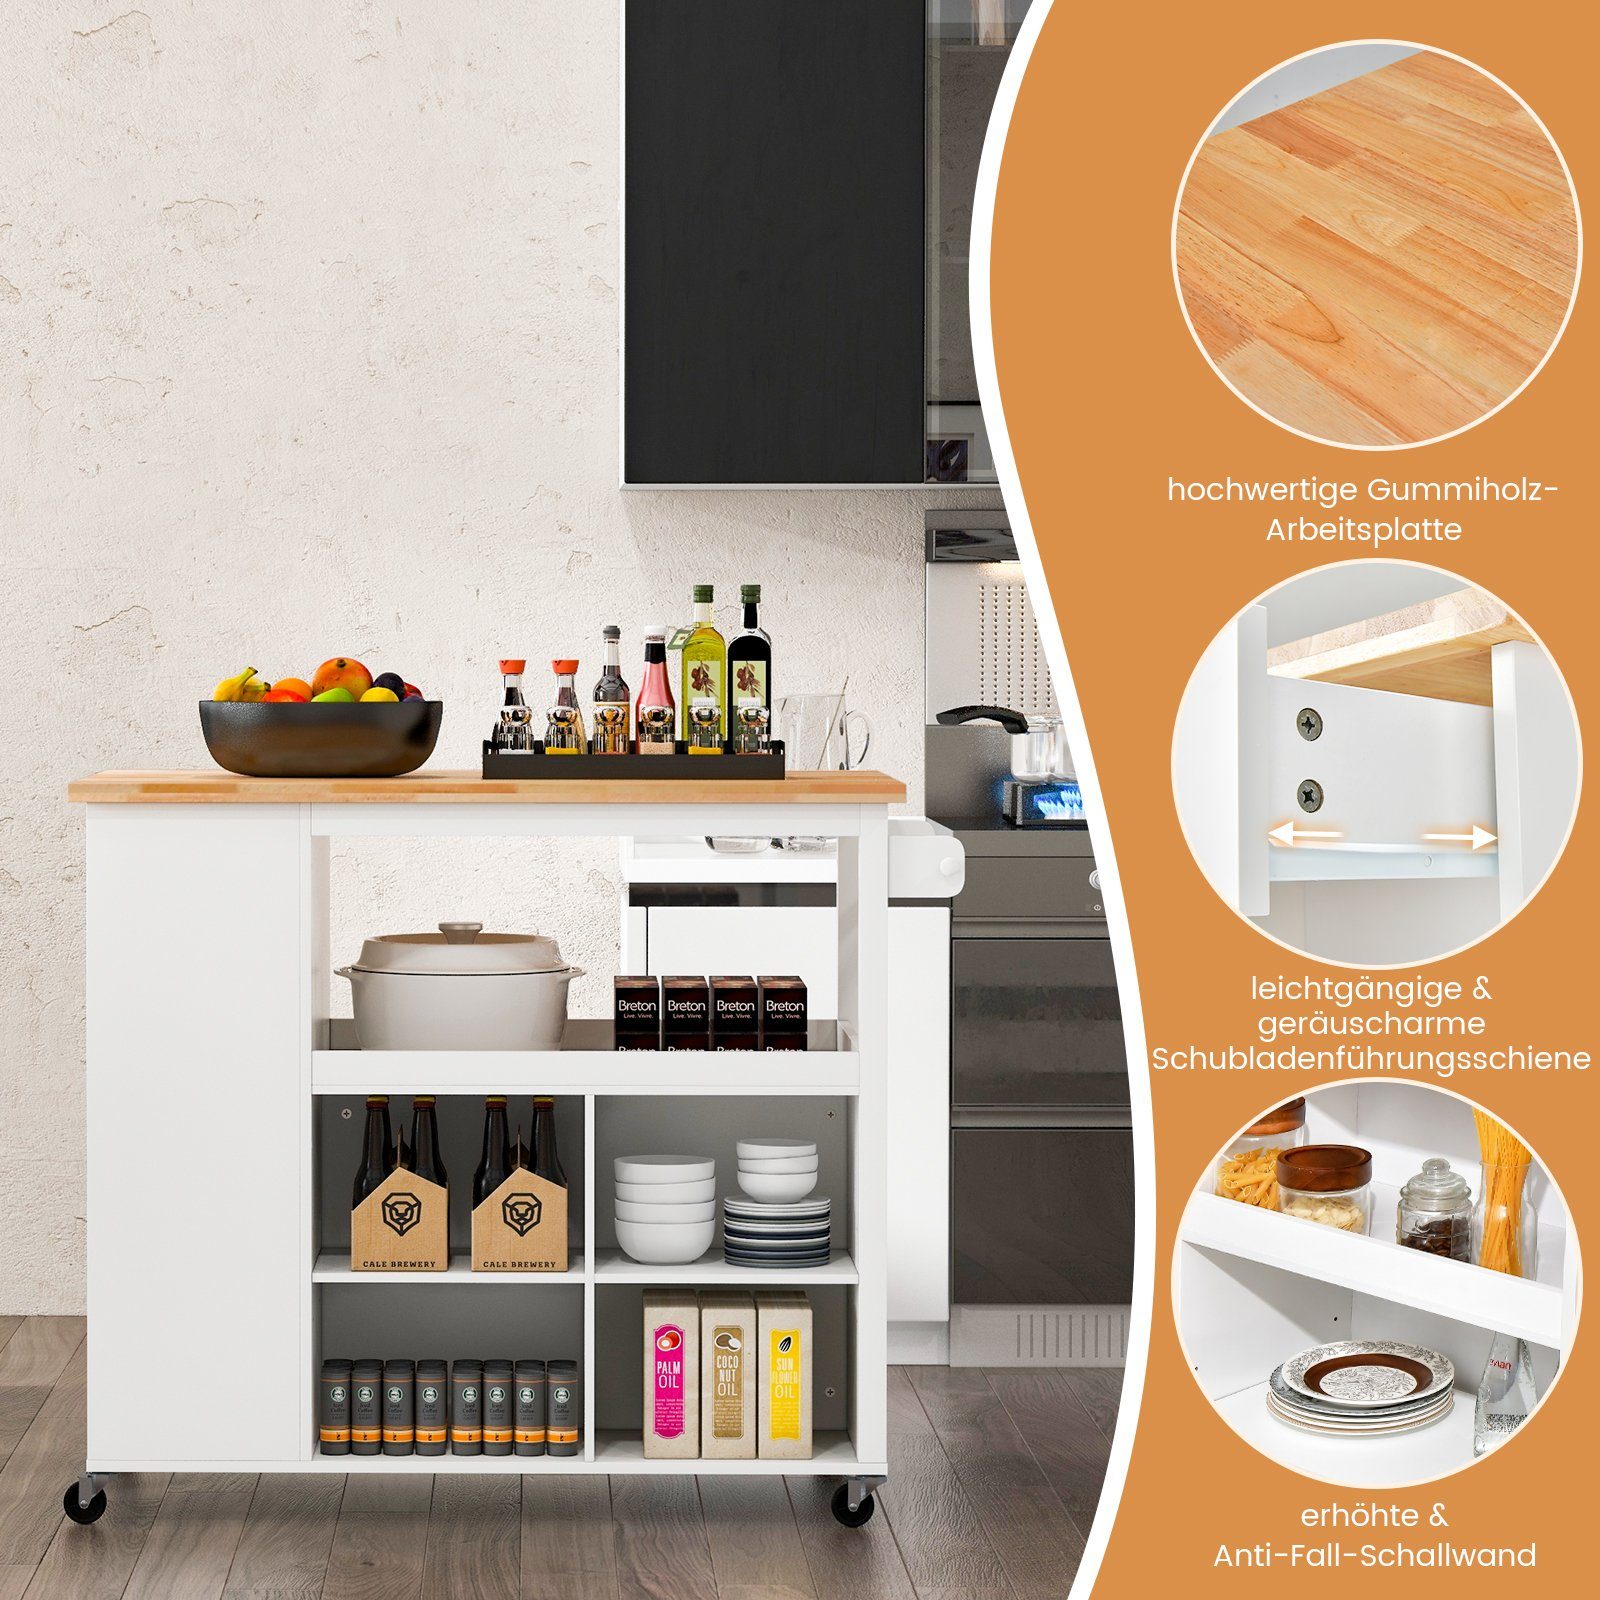 COSTWAY Küchenwagen, mit & Weiß, 4 Handtuchhalter Natur Regalen verstellbaren Schublade